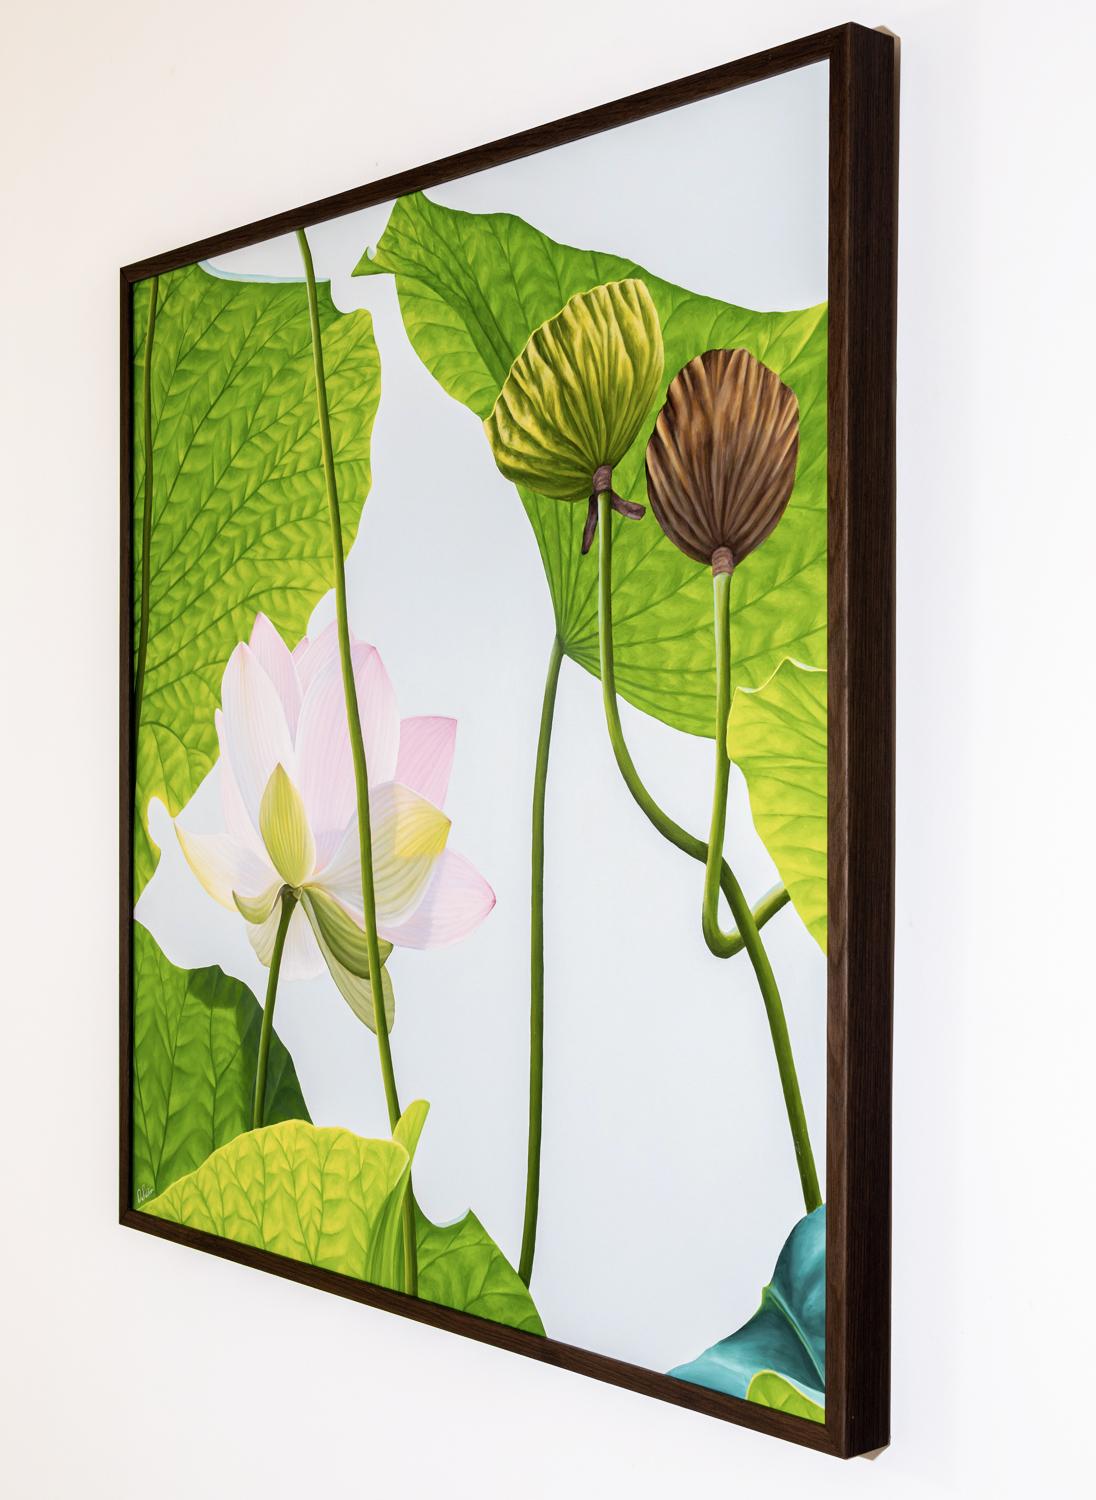 Lotus n° 65 (Peinture de nature morte photoréaliste de lotus roses et vertes) - Photoréalisme Painting par Frank DePietro